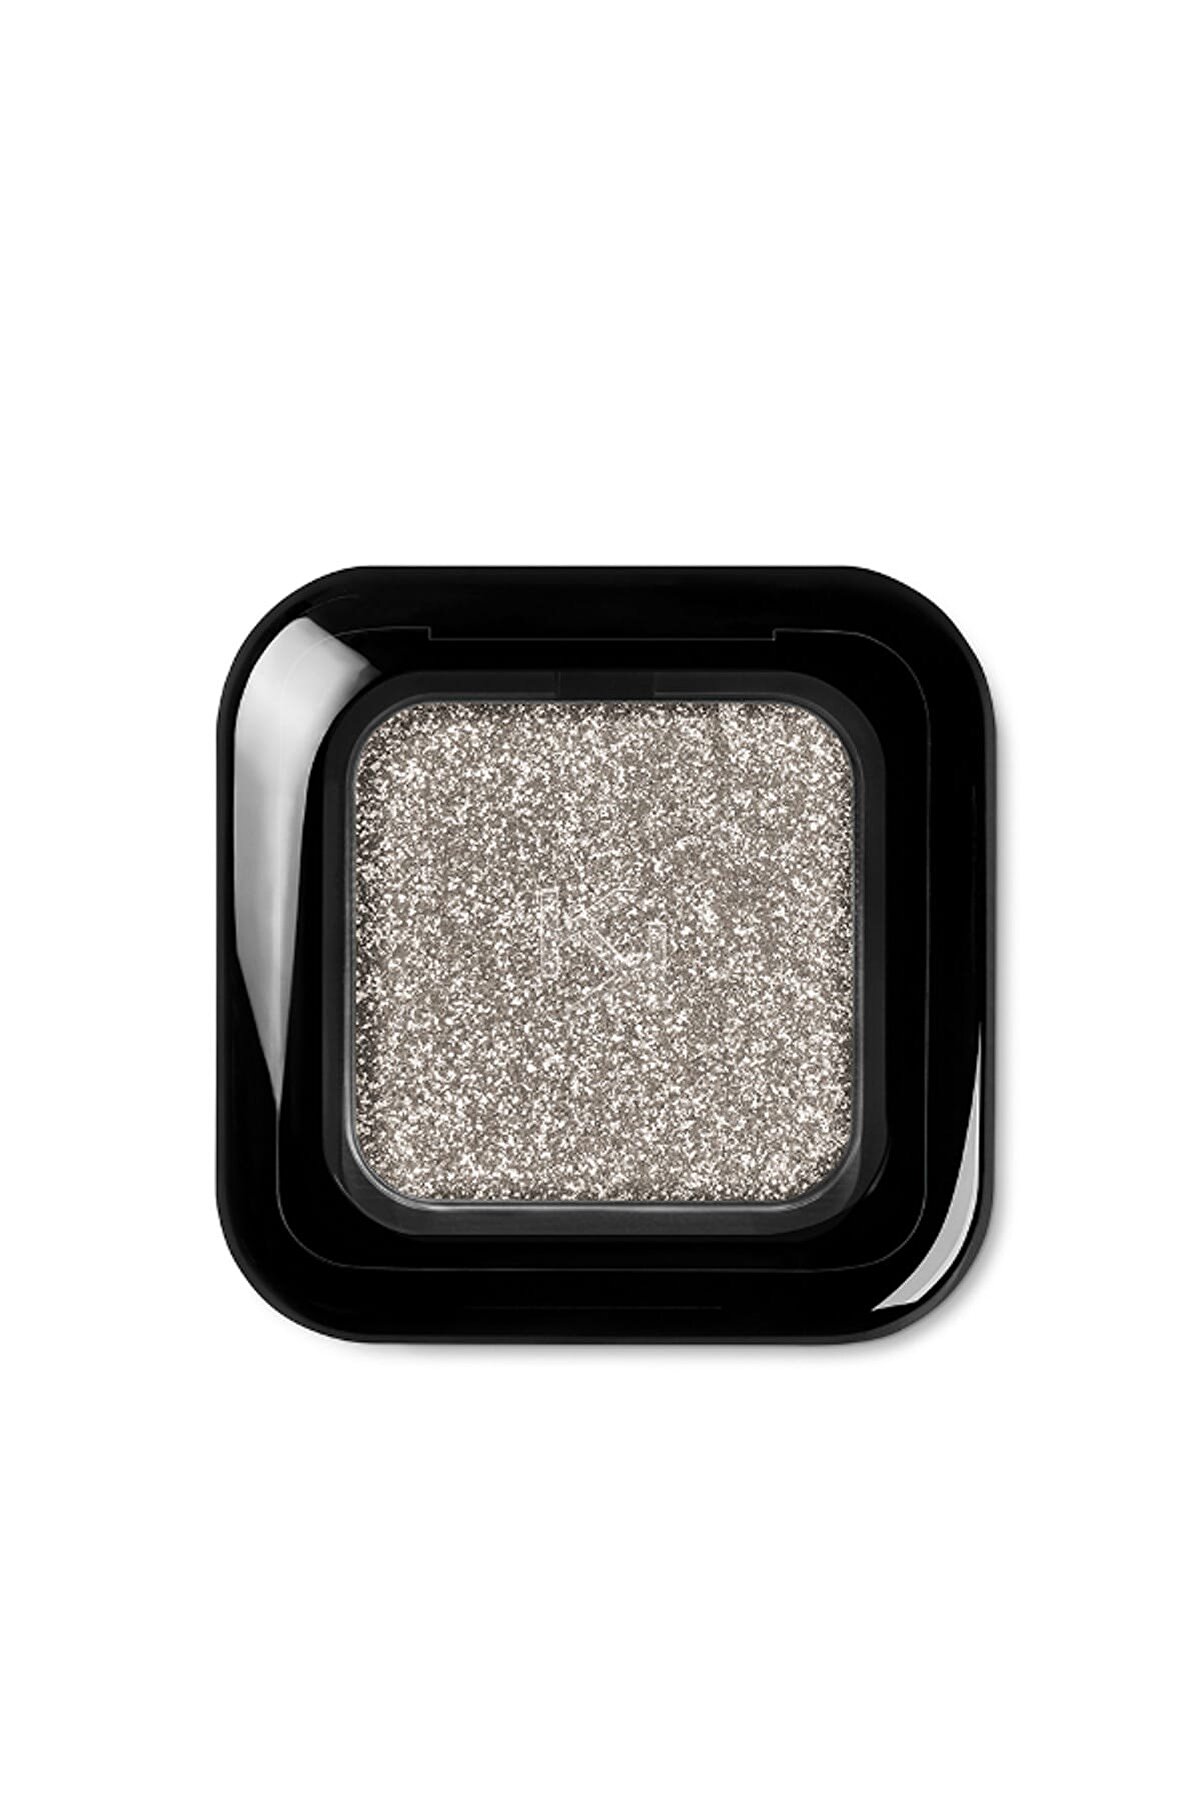 KIKO Göz Farı Paleti - Glitter Shower Eyeshadow 01 Silver Champagne 8025272641357